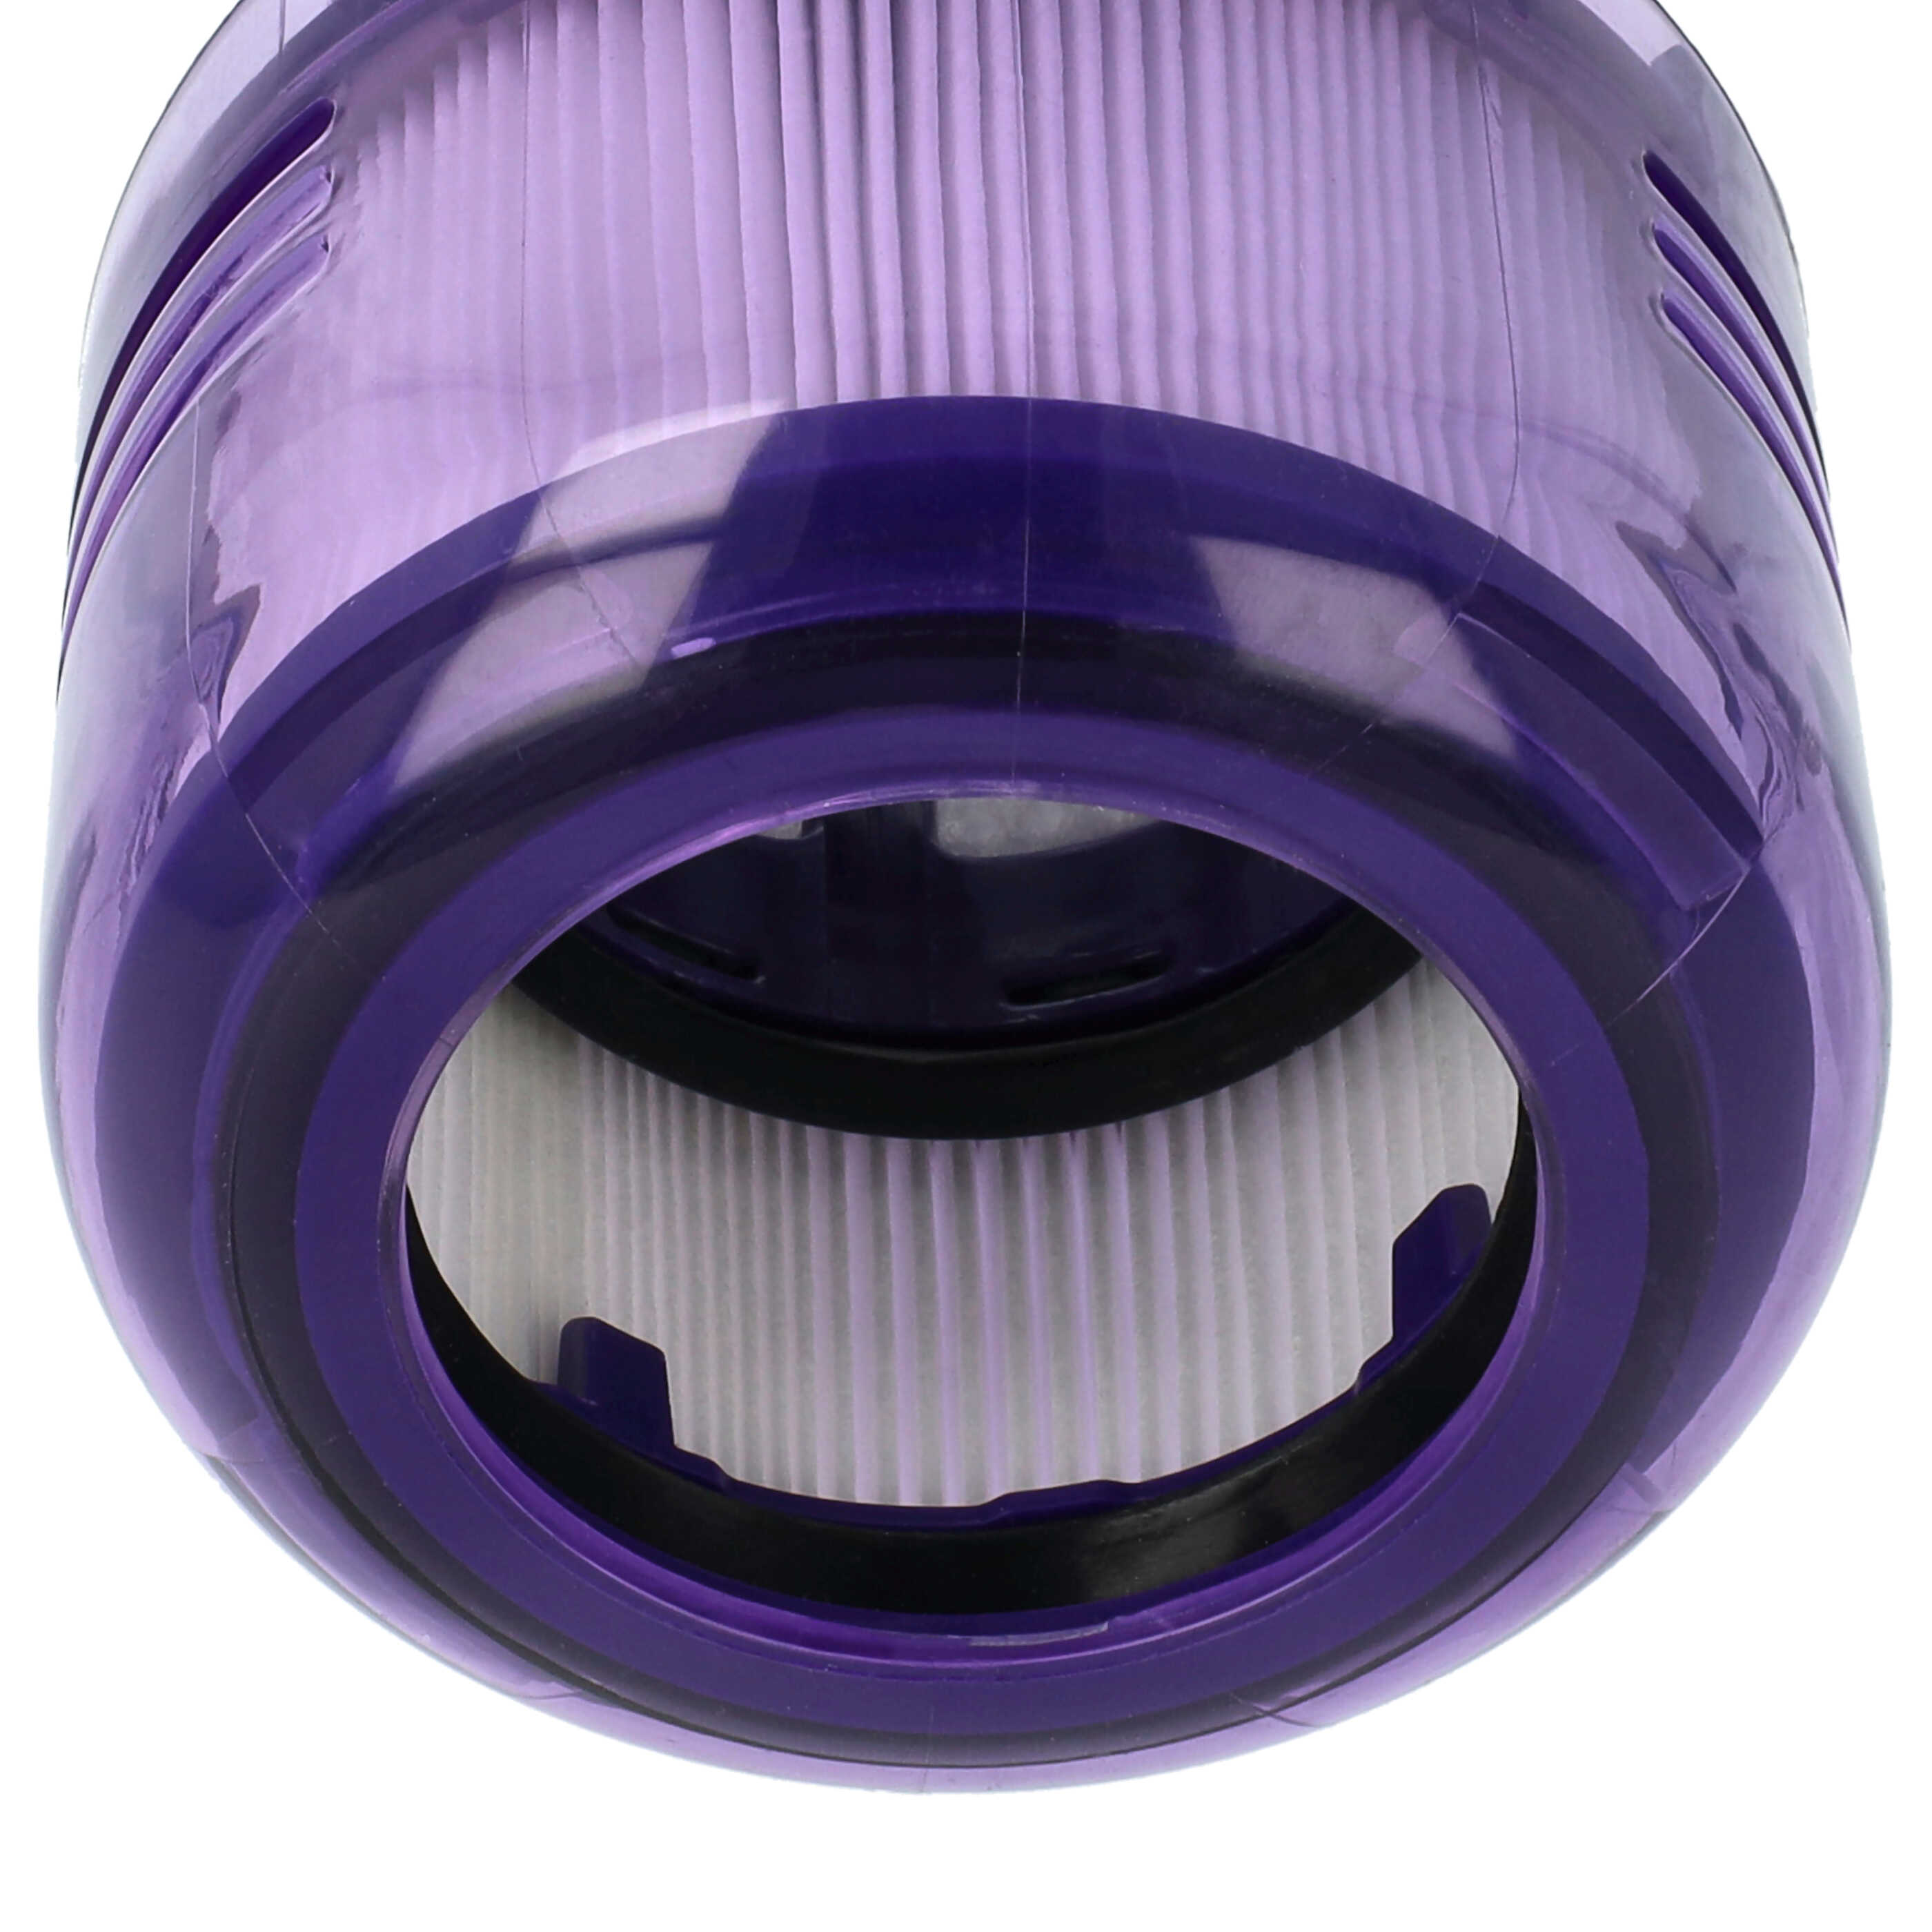 Filtro sostituisce Dyson 971517-01 per aspirapolvere - filtro HEPA, bianco / lilla